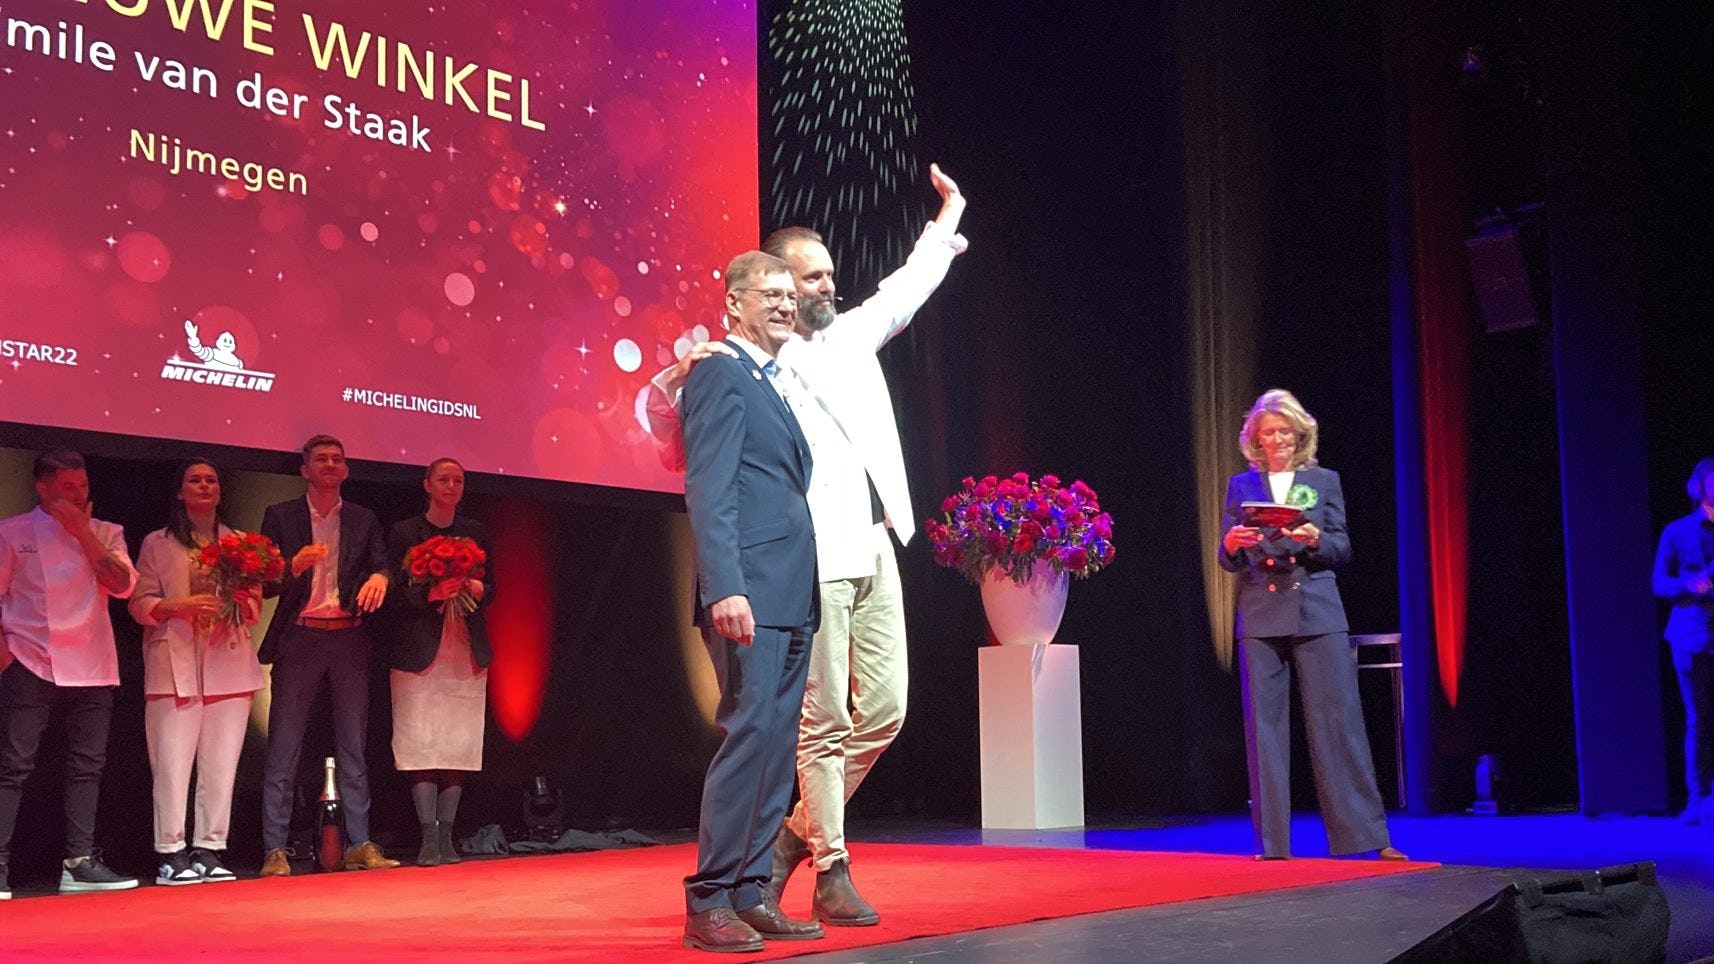 Van der Staak over tweede ster De Nieuwe Winkel: 'Duidelijke trendbreuk bij Michelin'